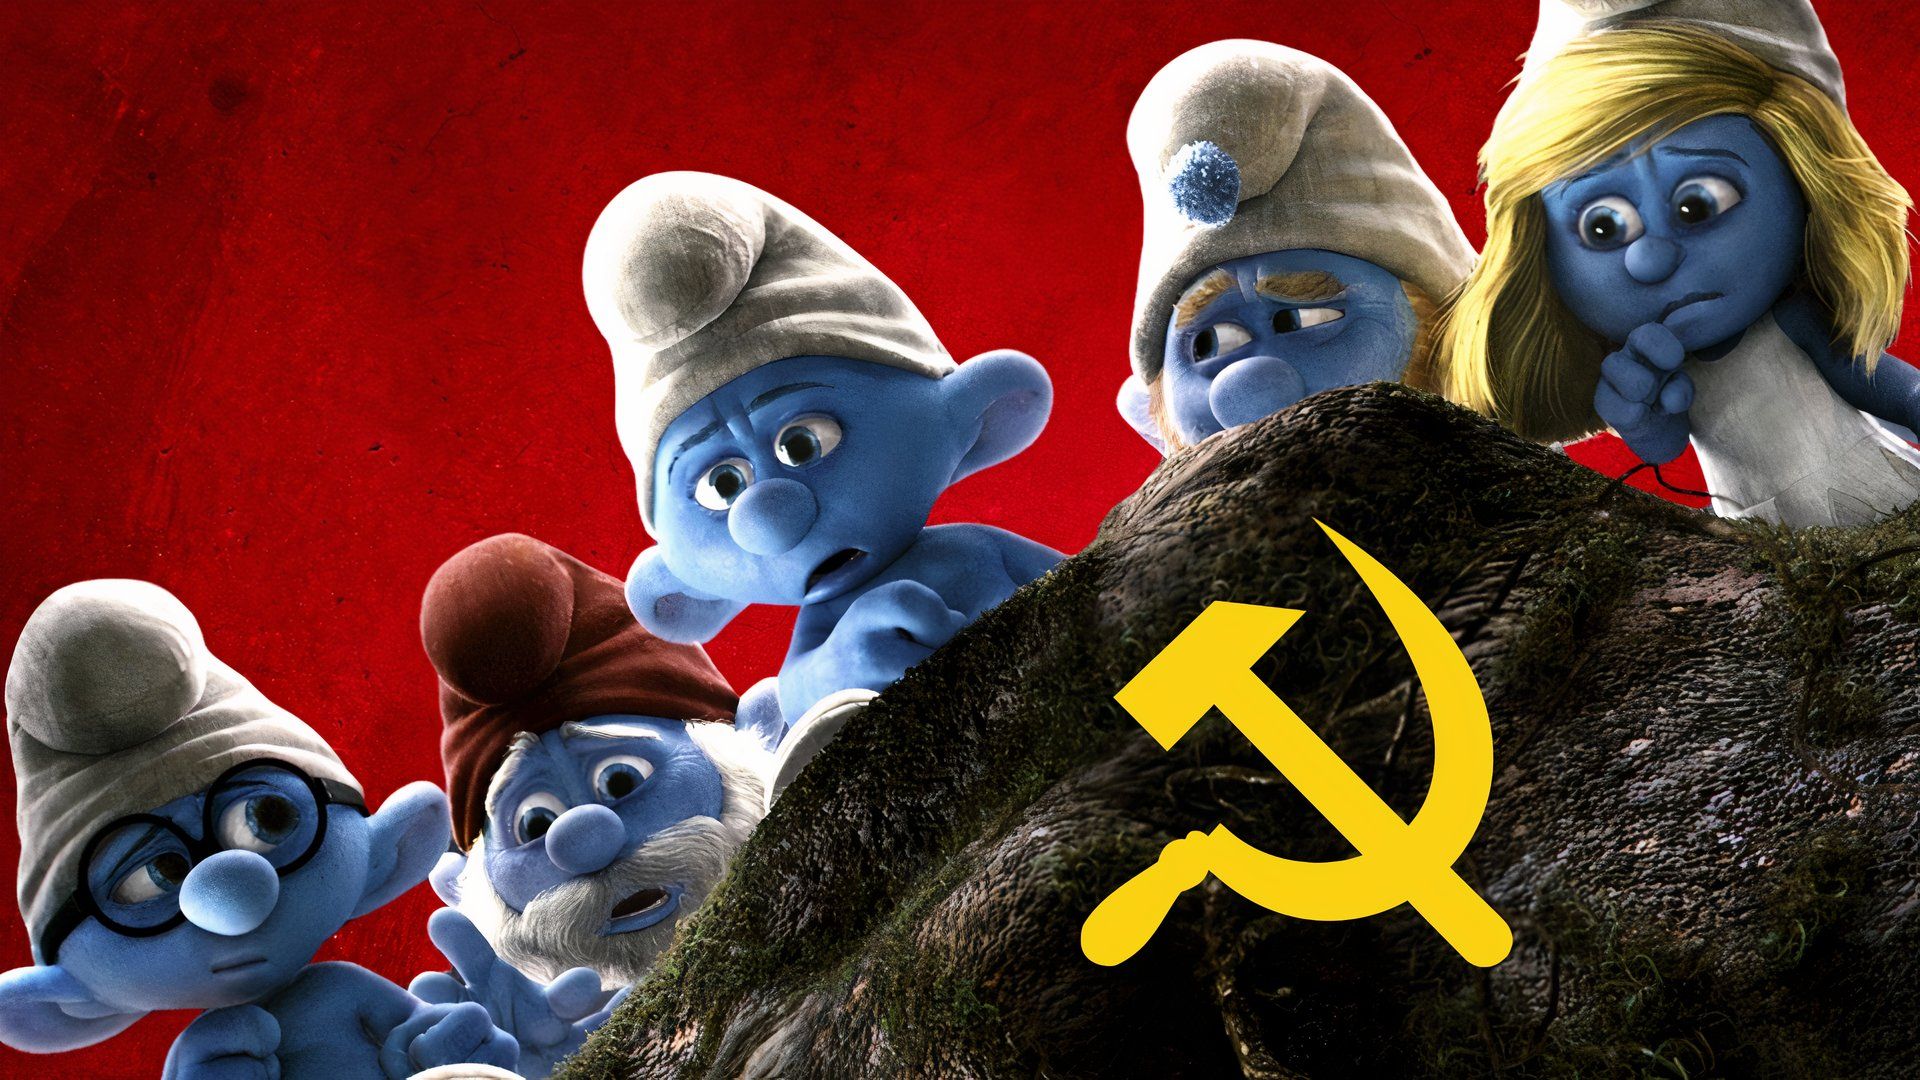 A custom image of the Smurfs 